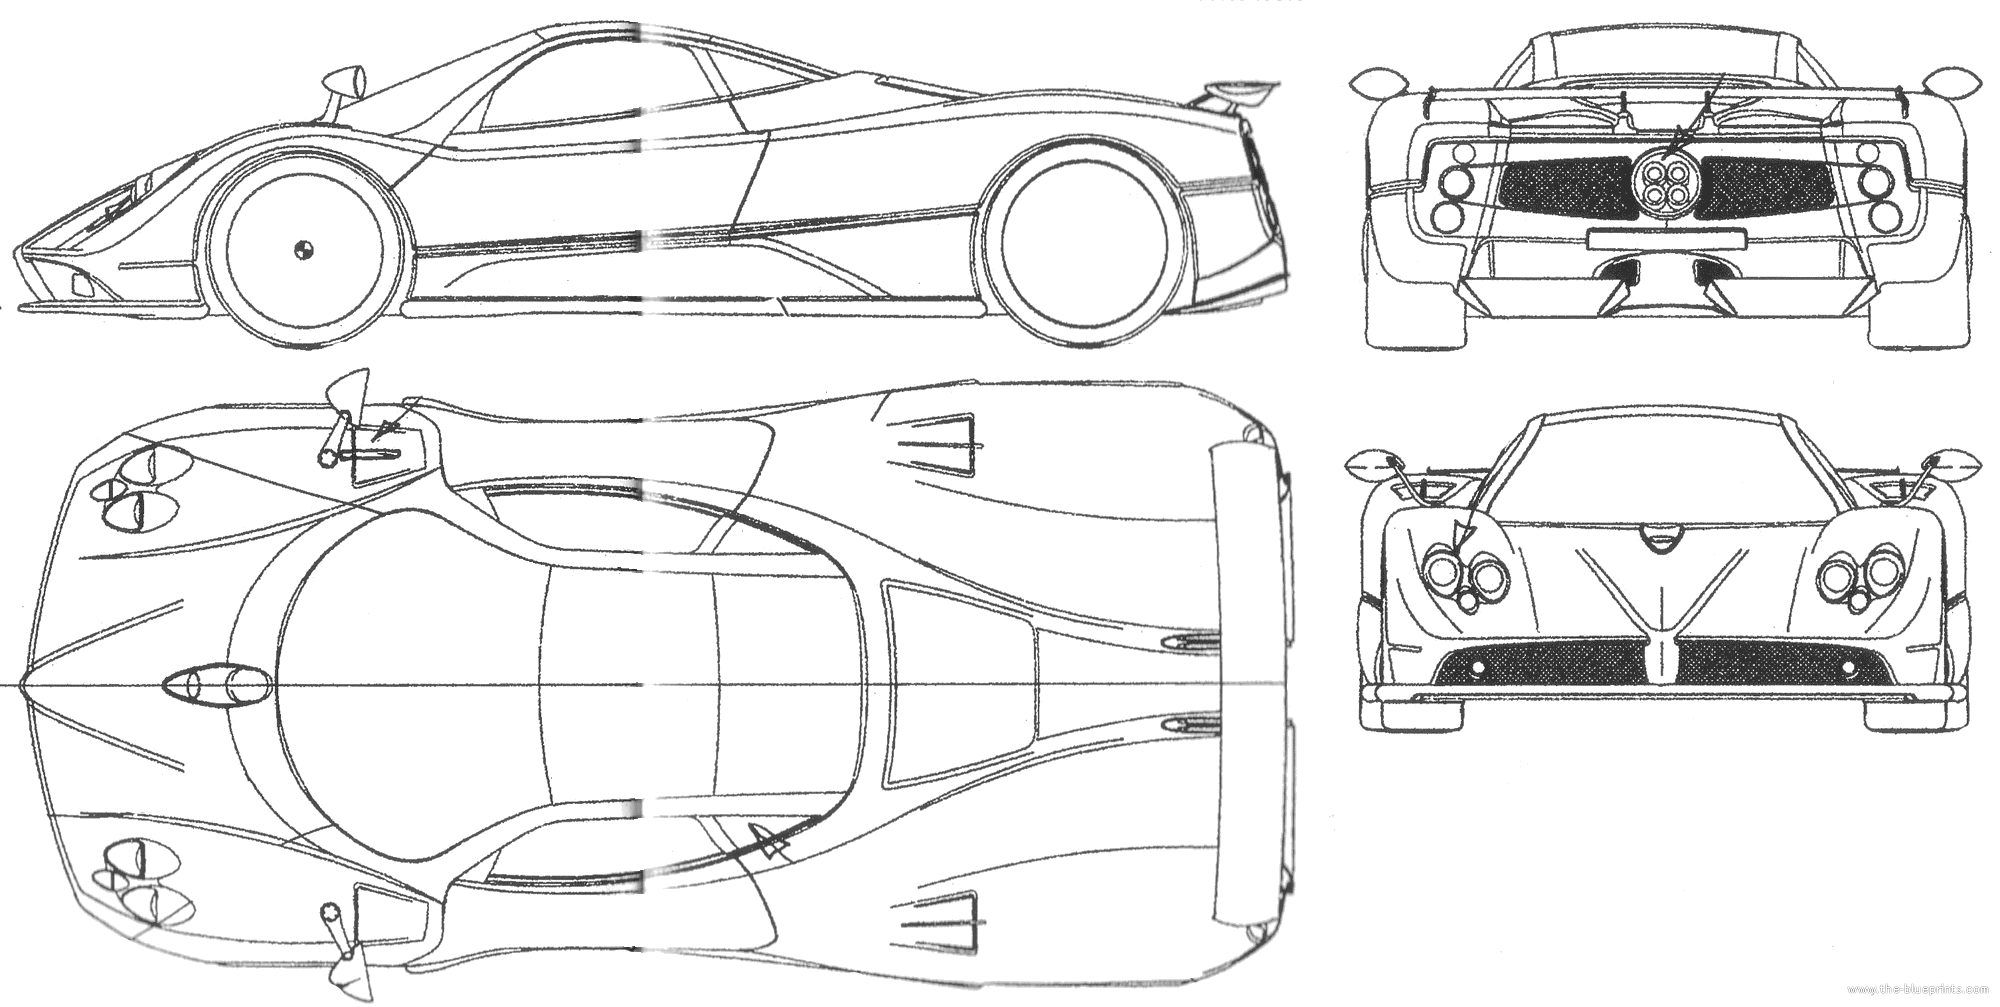 Mercedes vegetable tank drawings #6